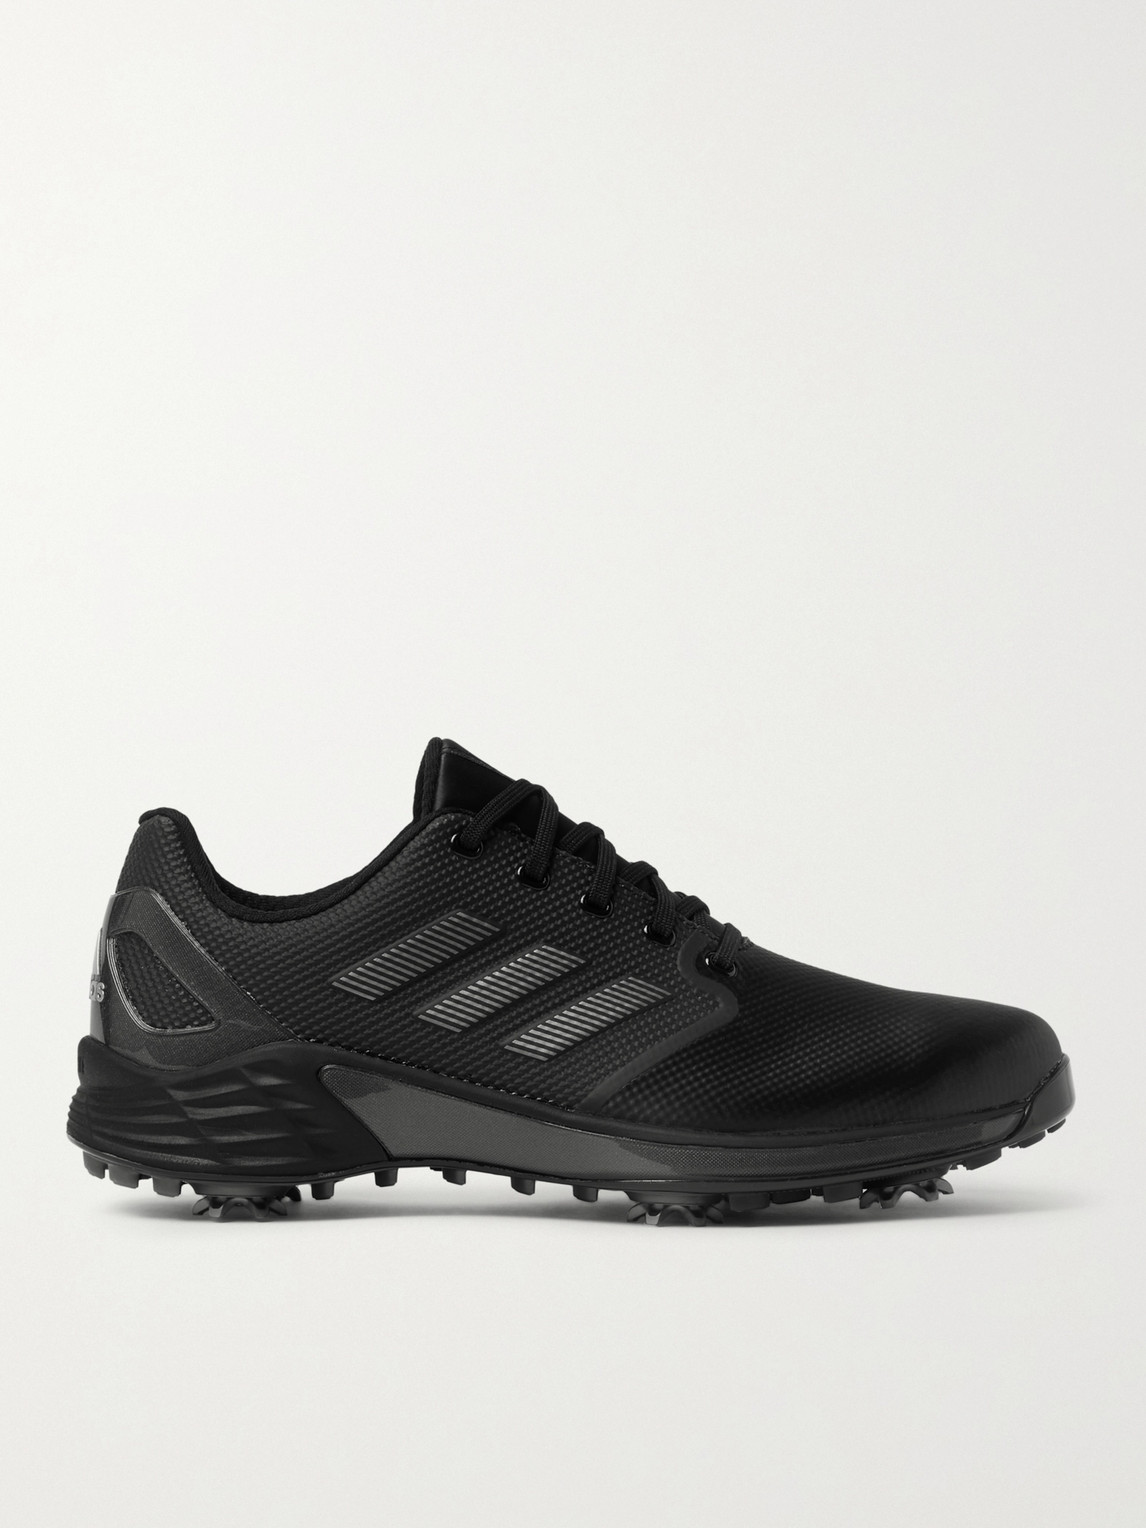 Adidas Golf Zg21 Sprintskin Golf Shoes In Black